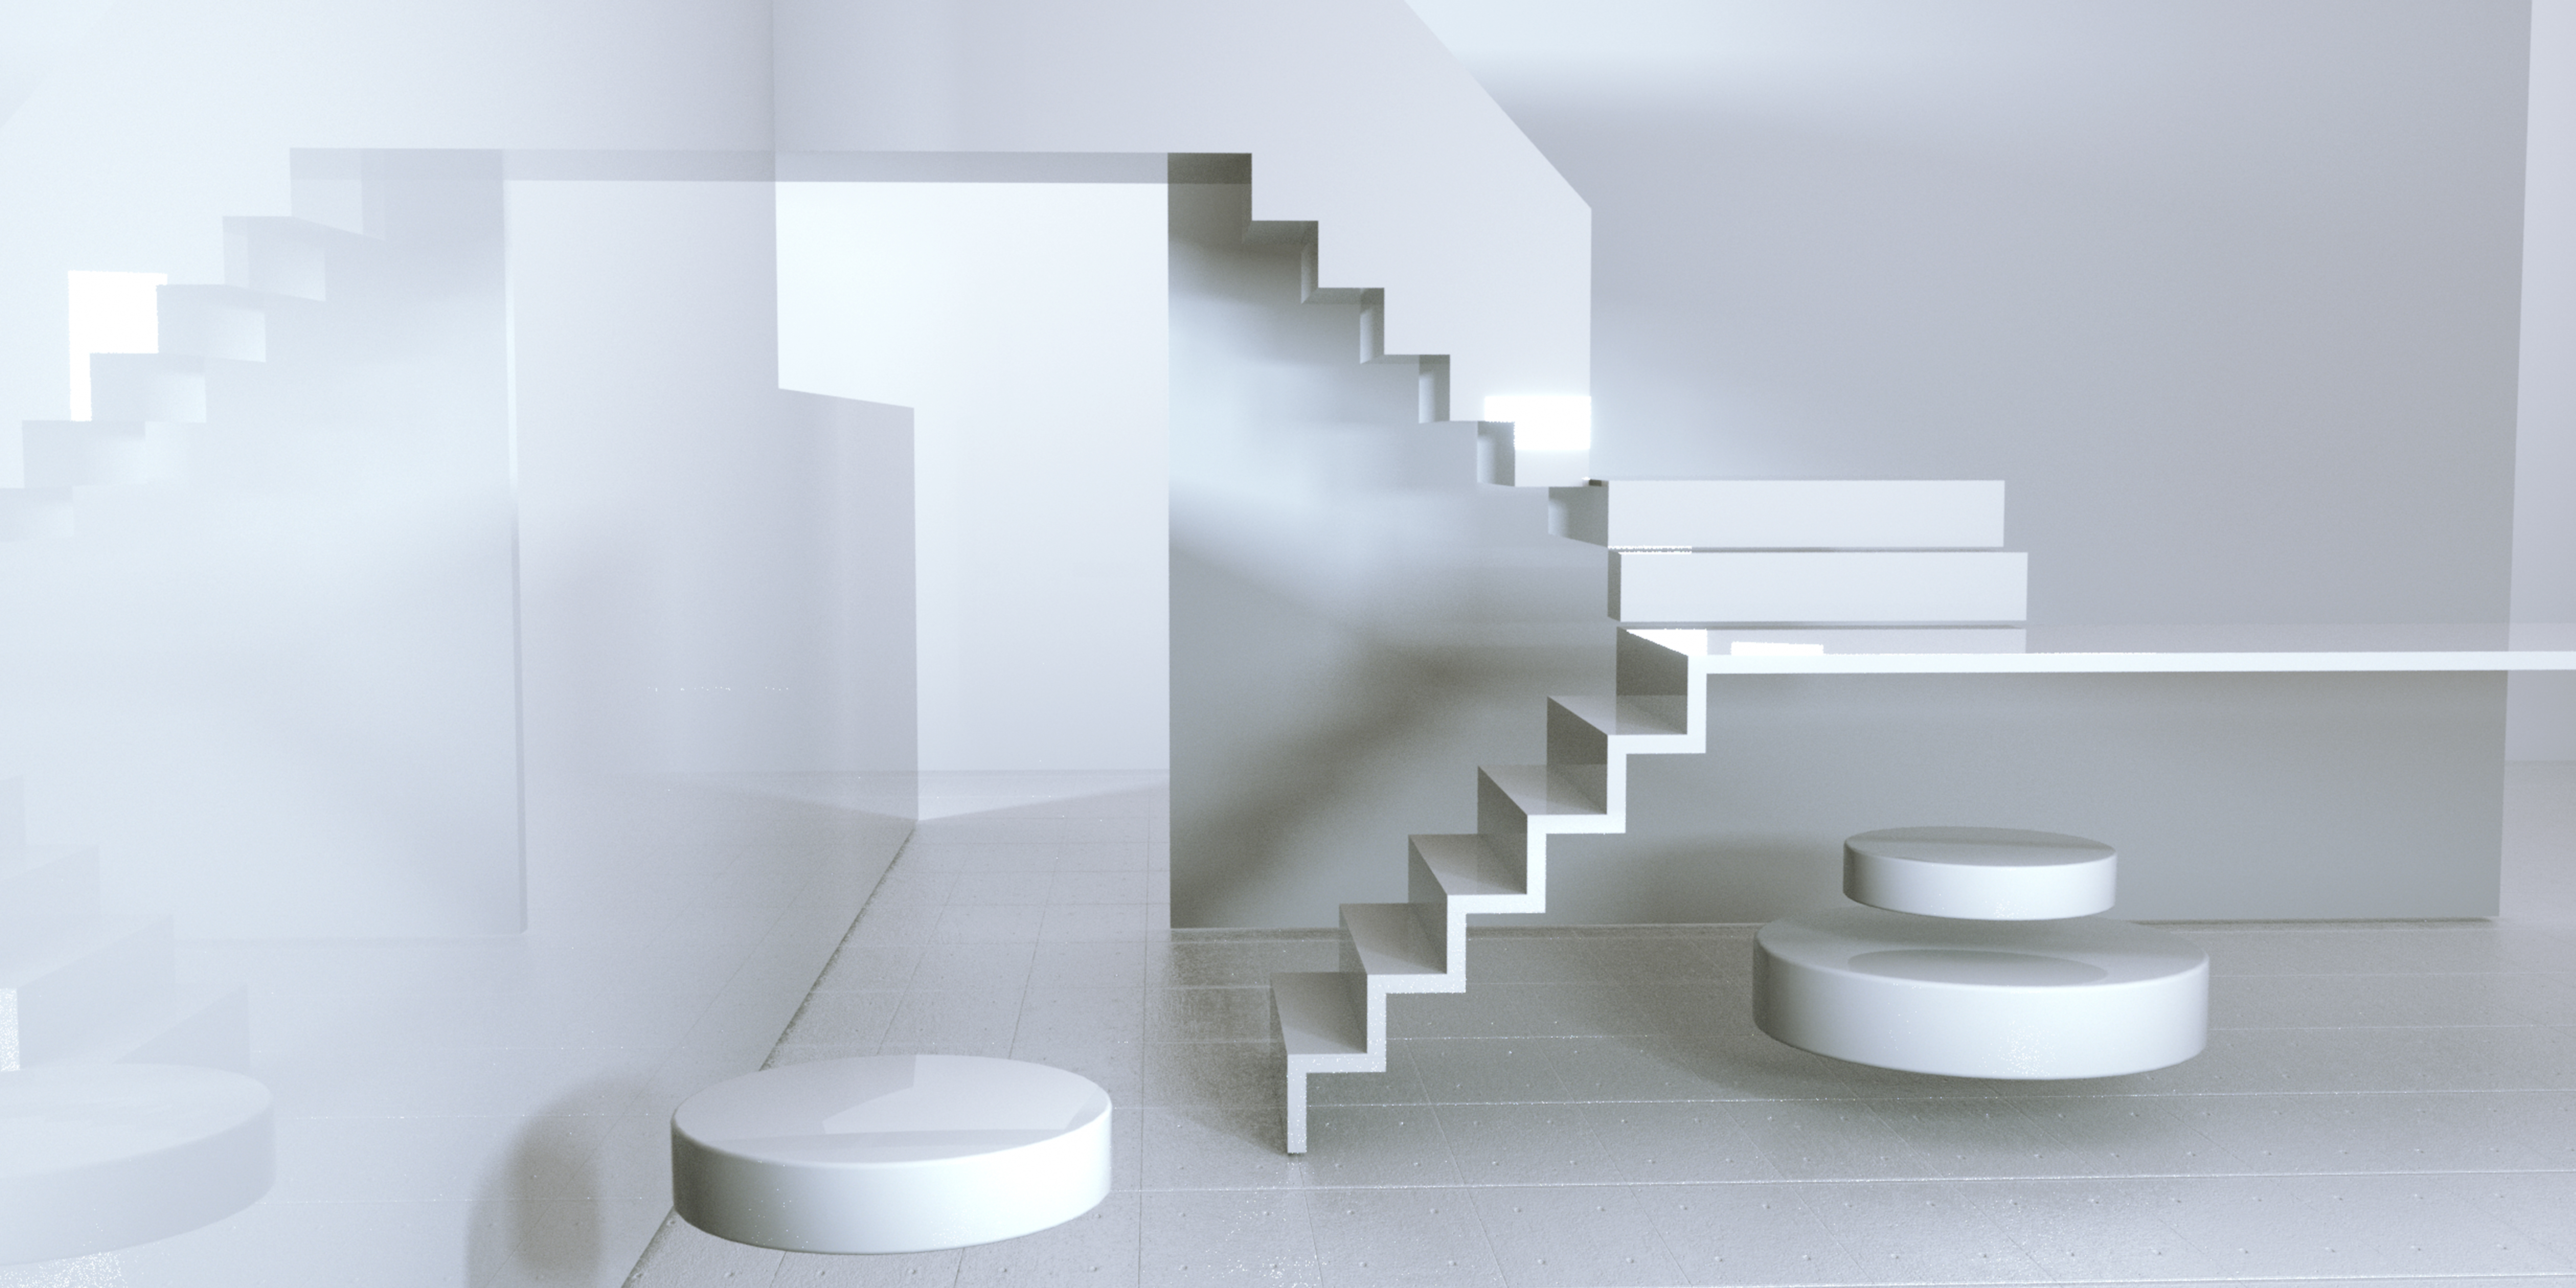 C4D模型几何创意空间纯白阶梯场景031.jpg